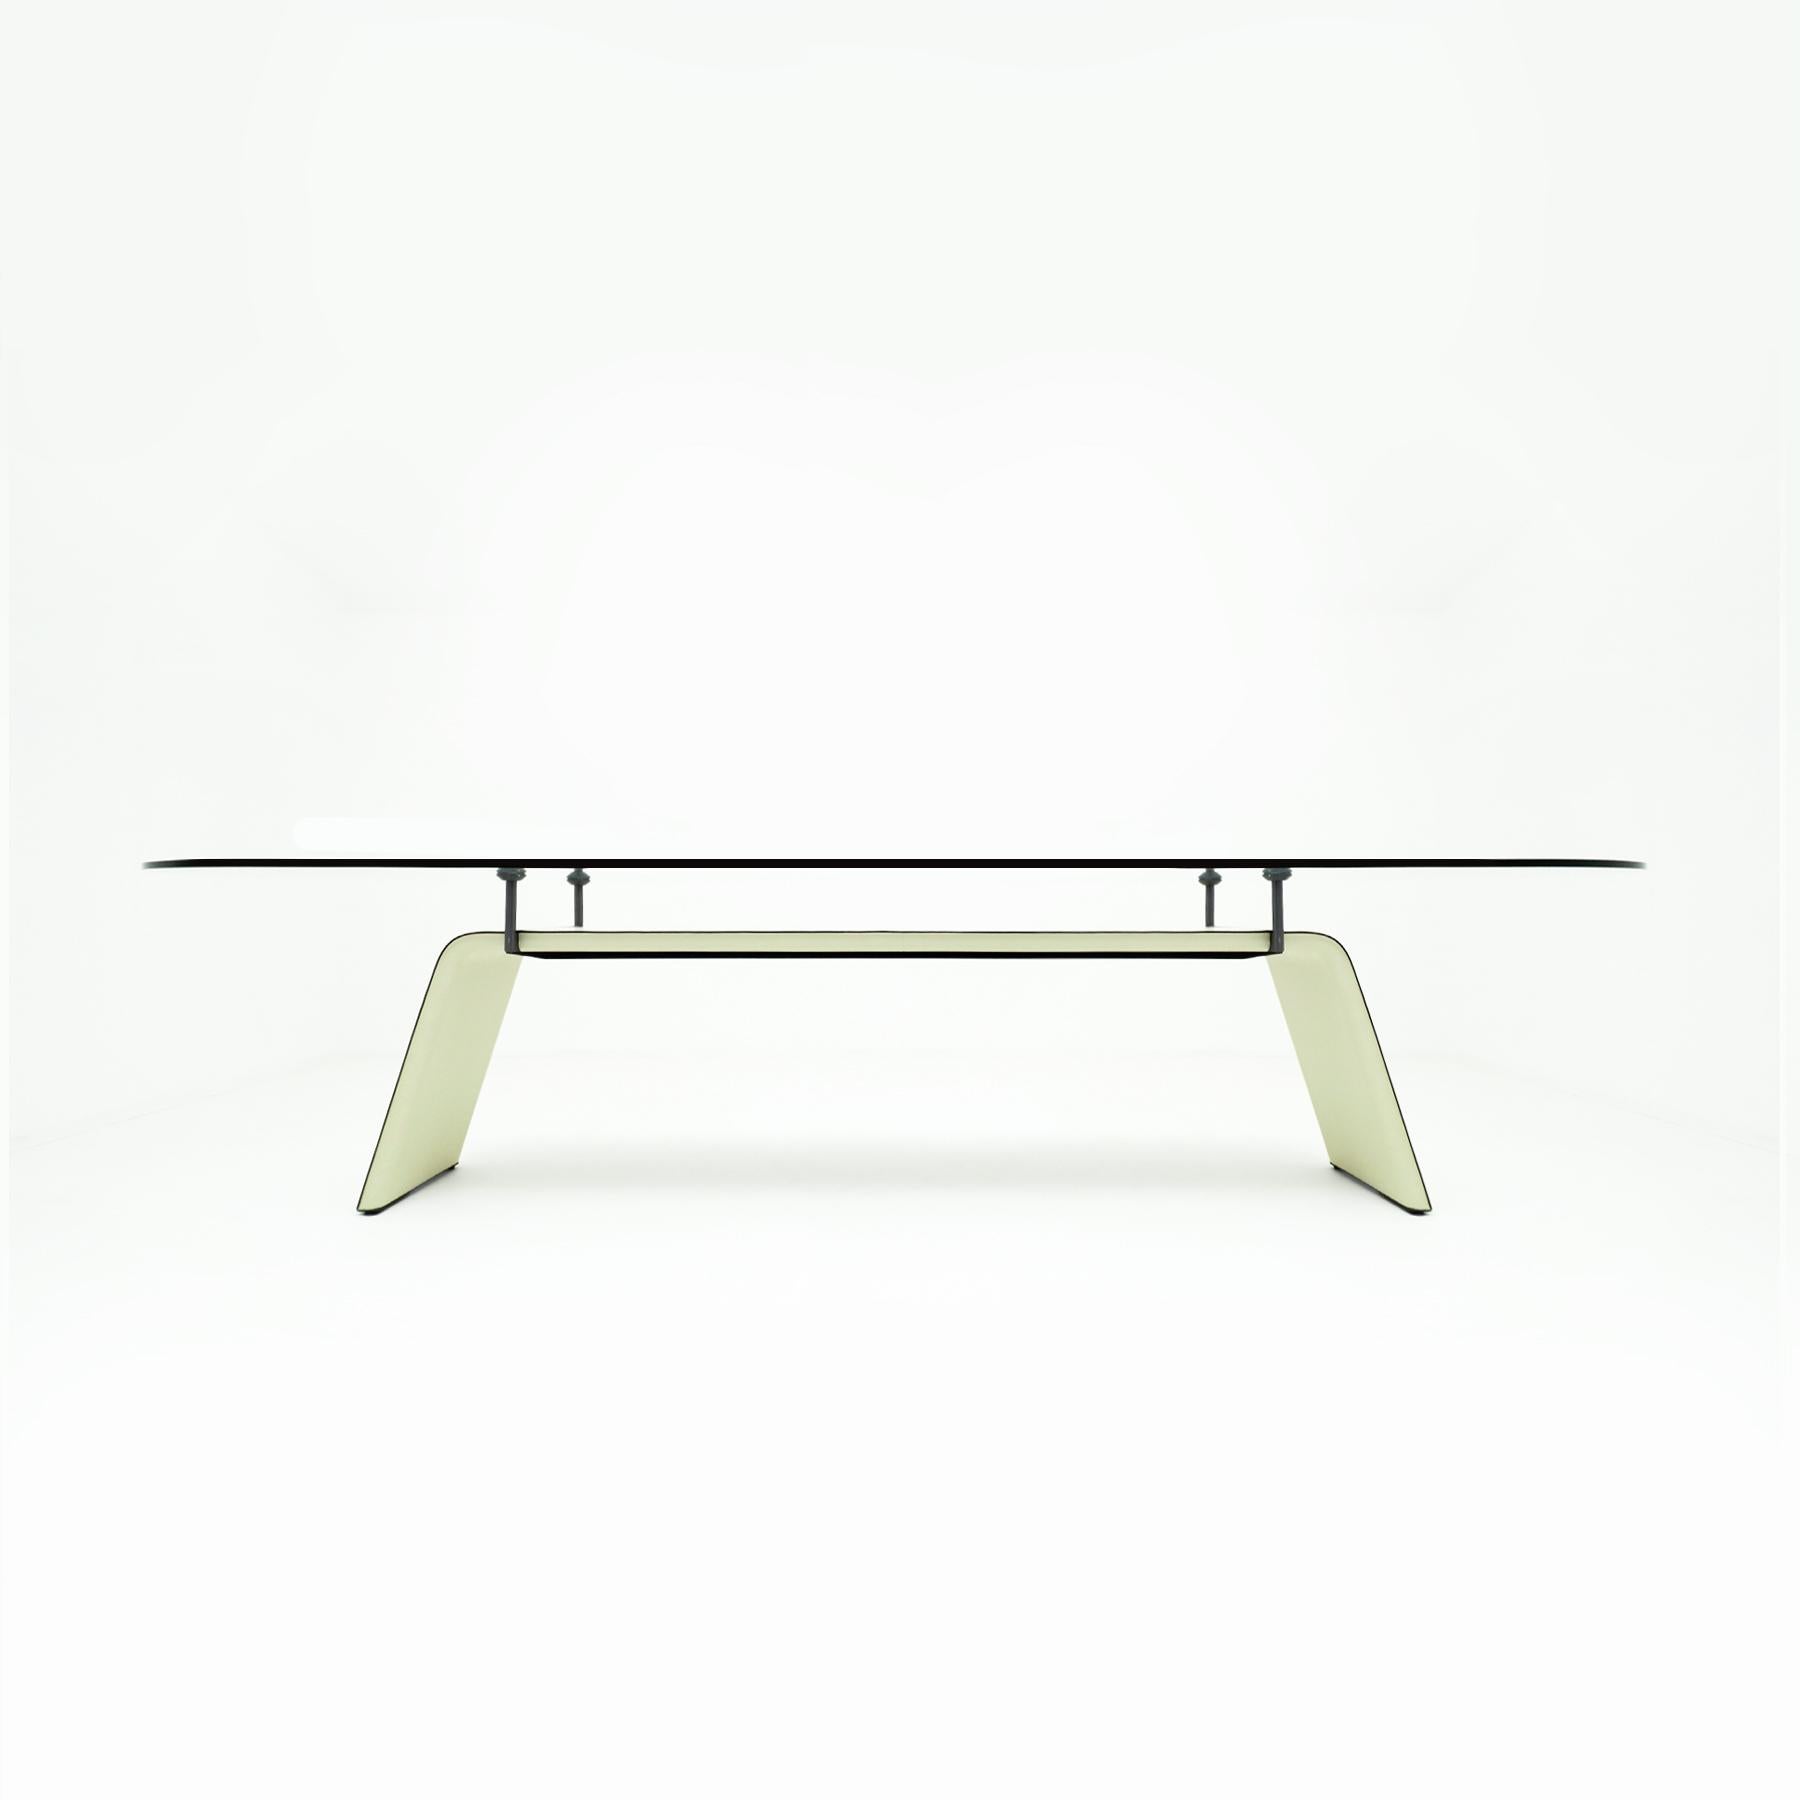 Table de salle à manger ou de conférence en cuir crème et verre Matteo Grassi, magnifiquement conçue et fabriquée, avec une base en acier recouverte de cuir crème et un plateau de table flottant en verre épais. La table peut, selon la largeur des